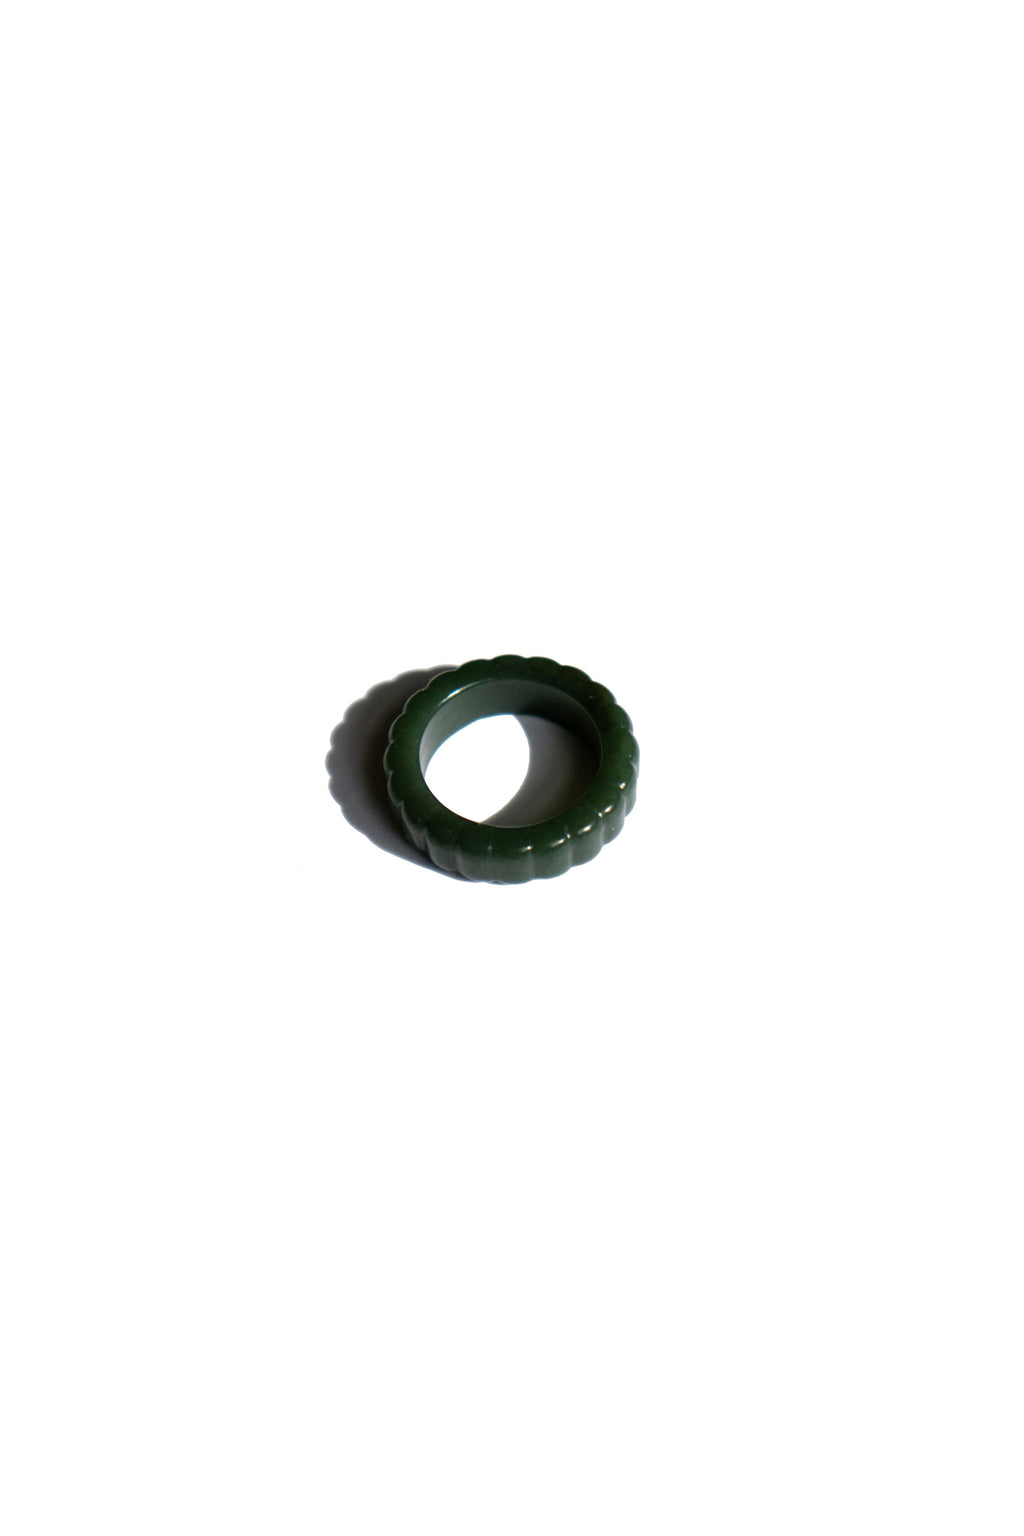 seree-sophia-skinny-ribbed-ring-in-dark-green-nephrite-jade